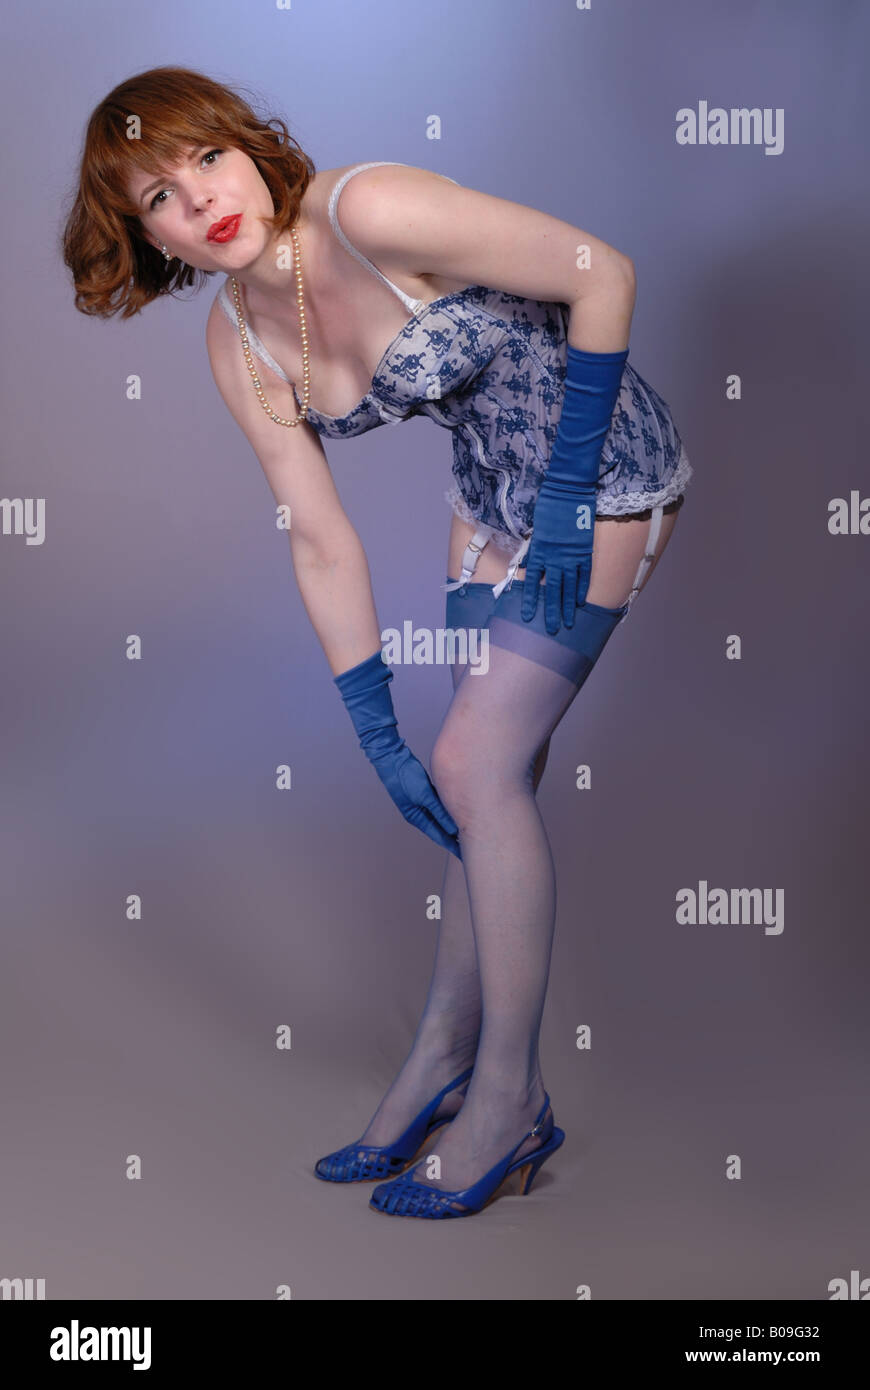 Attraente retrò degli anni cinquanta pinup girl in blue vintage lingerie  blu e calze di nylon Foto stock - Alamy